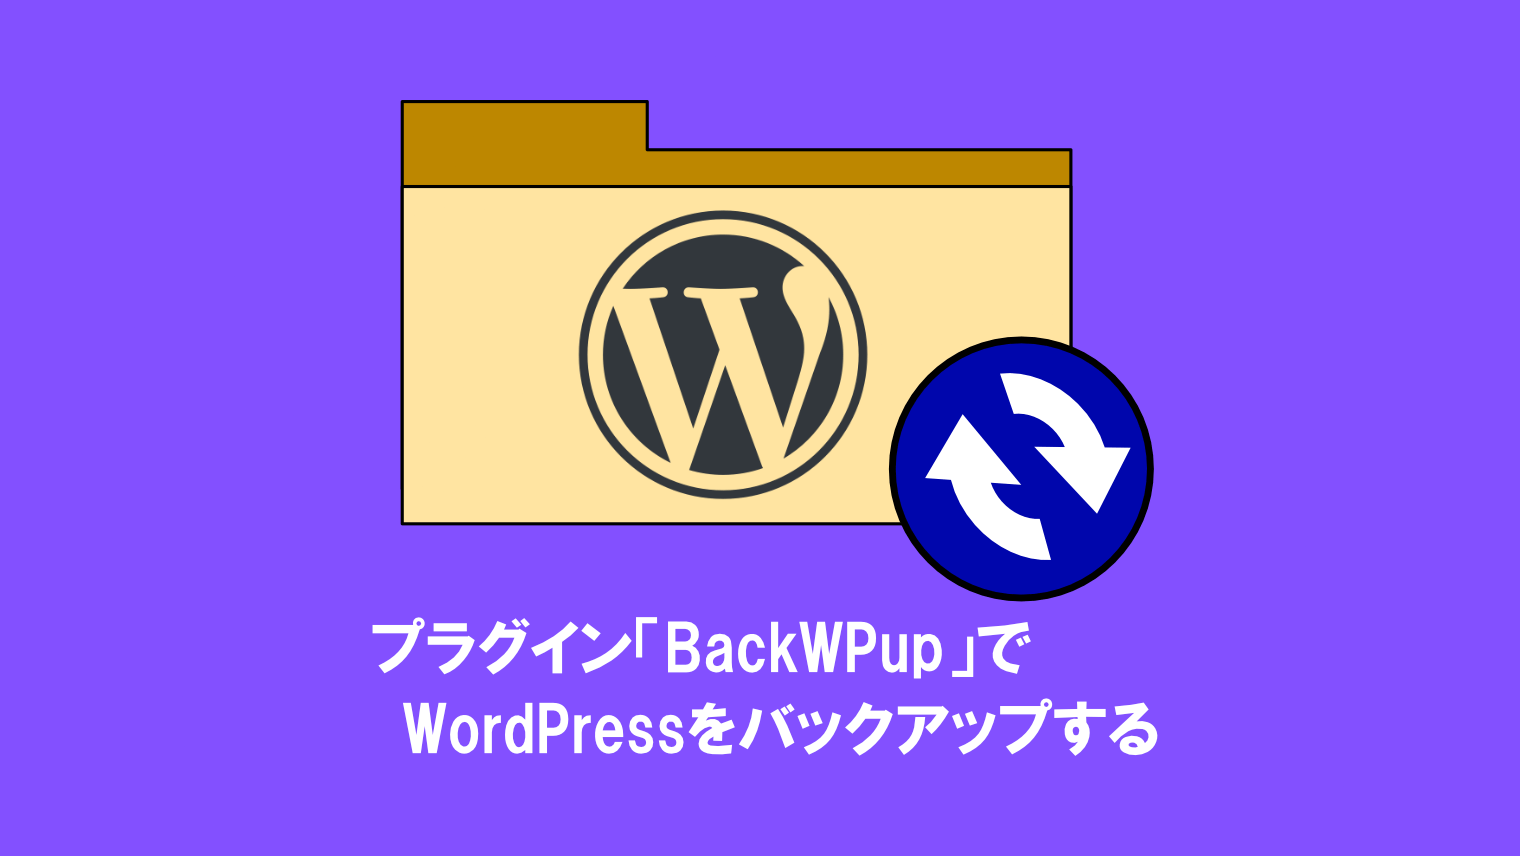 プラグイン「BackWPup」でWordPressを簡単にバックアップする方法【初心者向け】